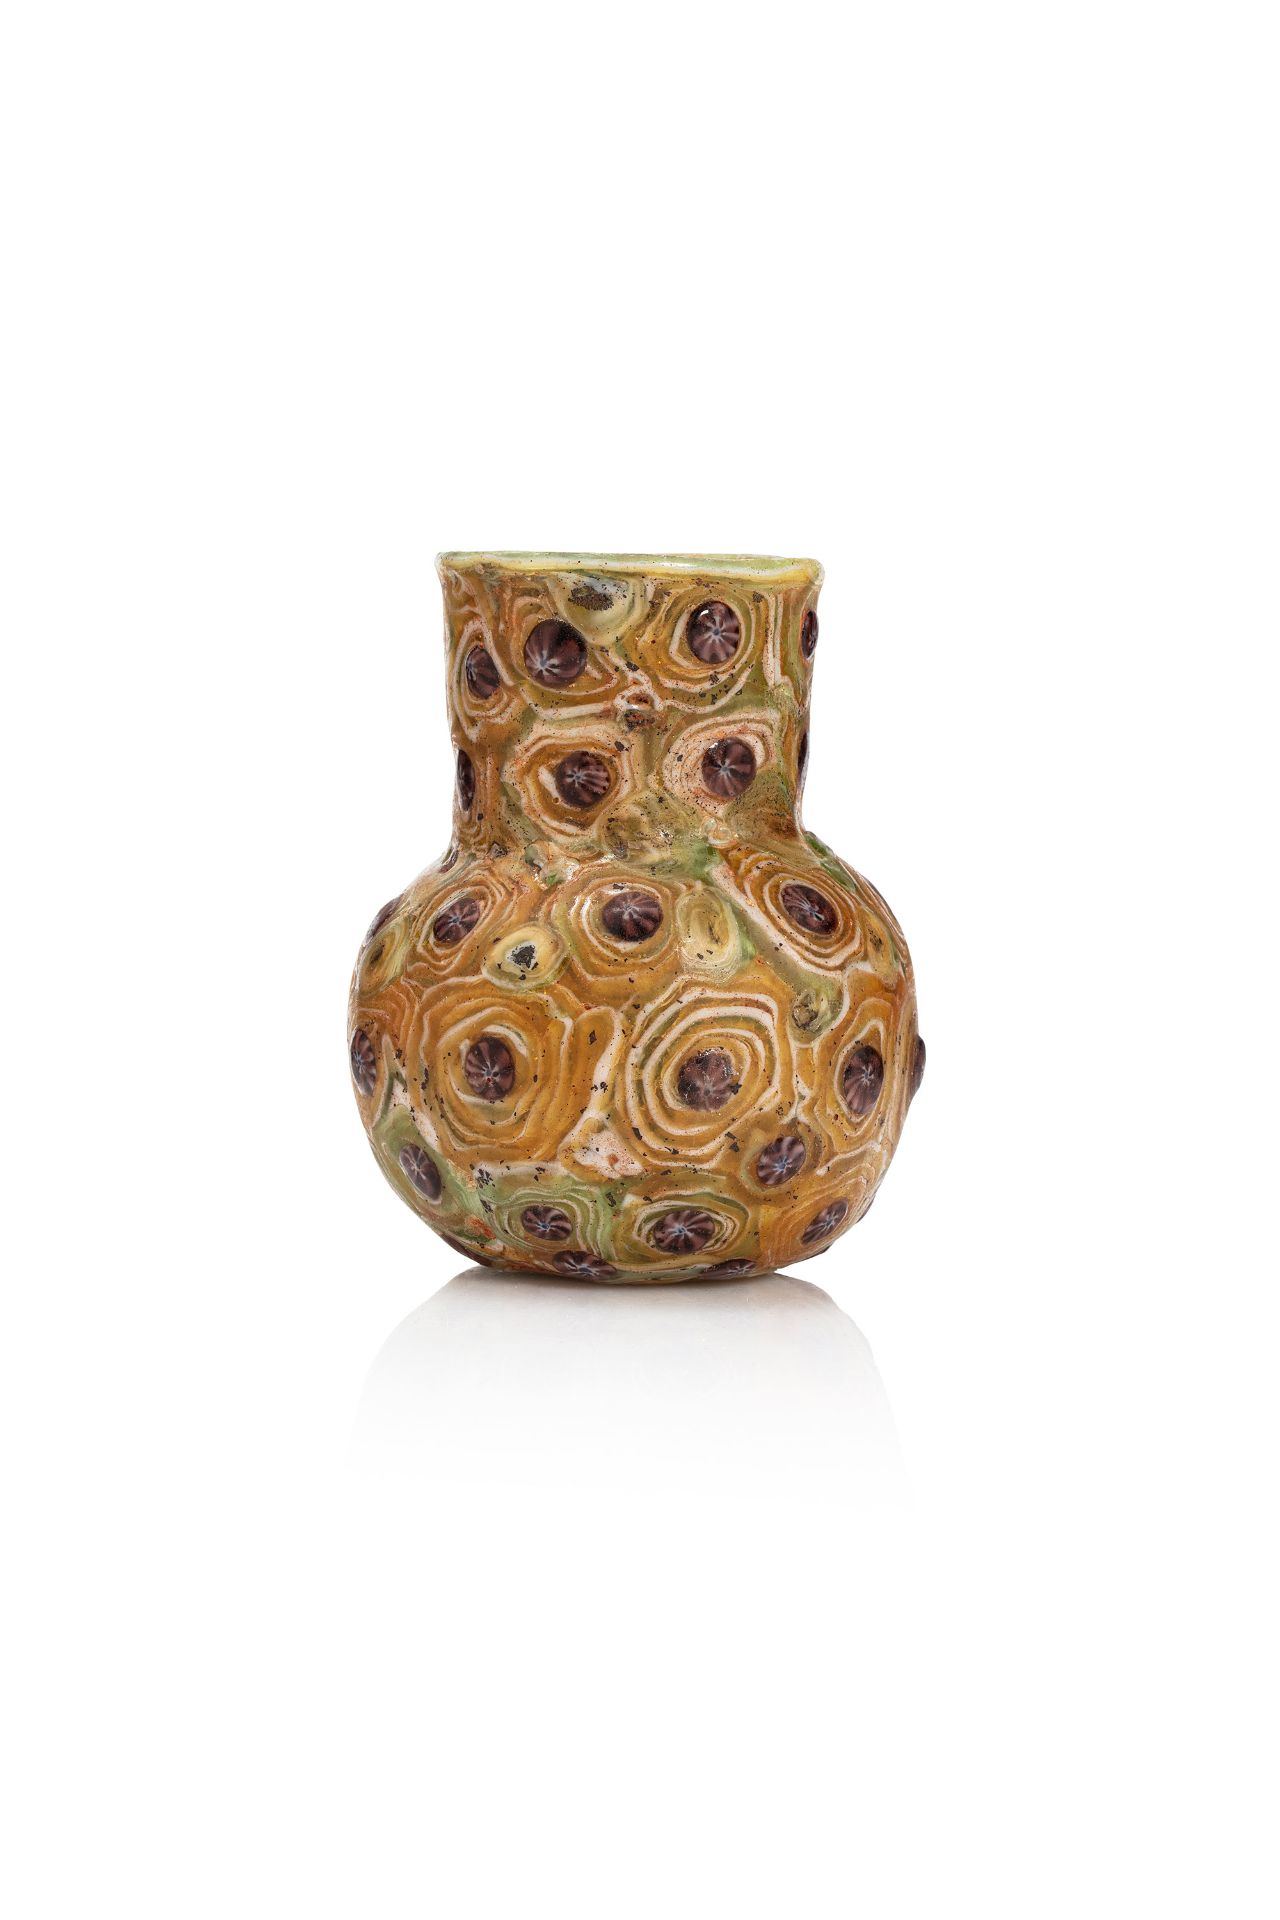 Vase millefiori - Probablement Syrie, VIIIe-IXe siècle - En verre multicolore, à [...]